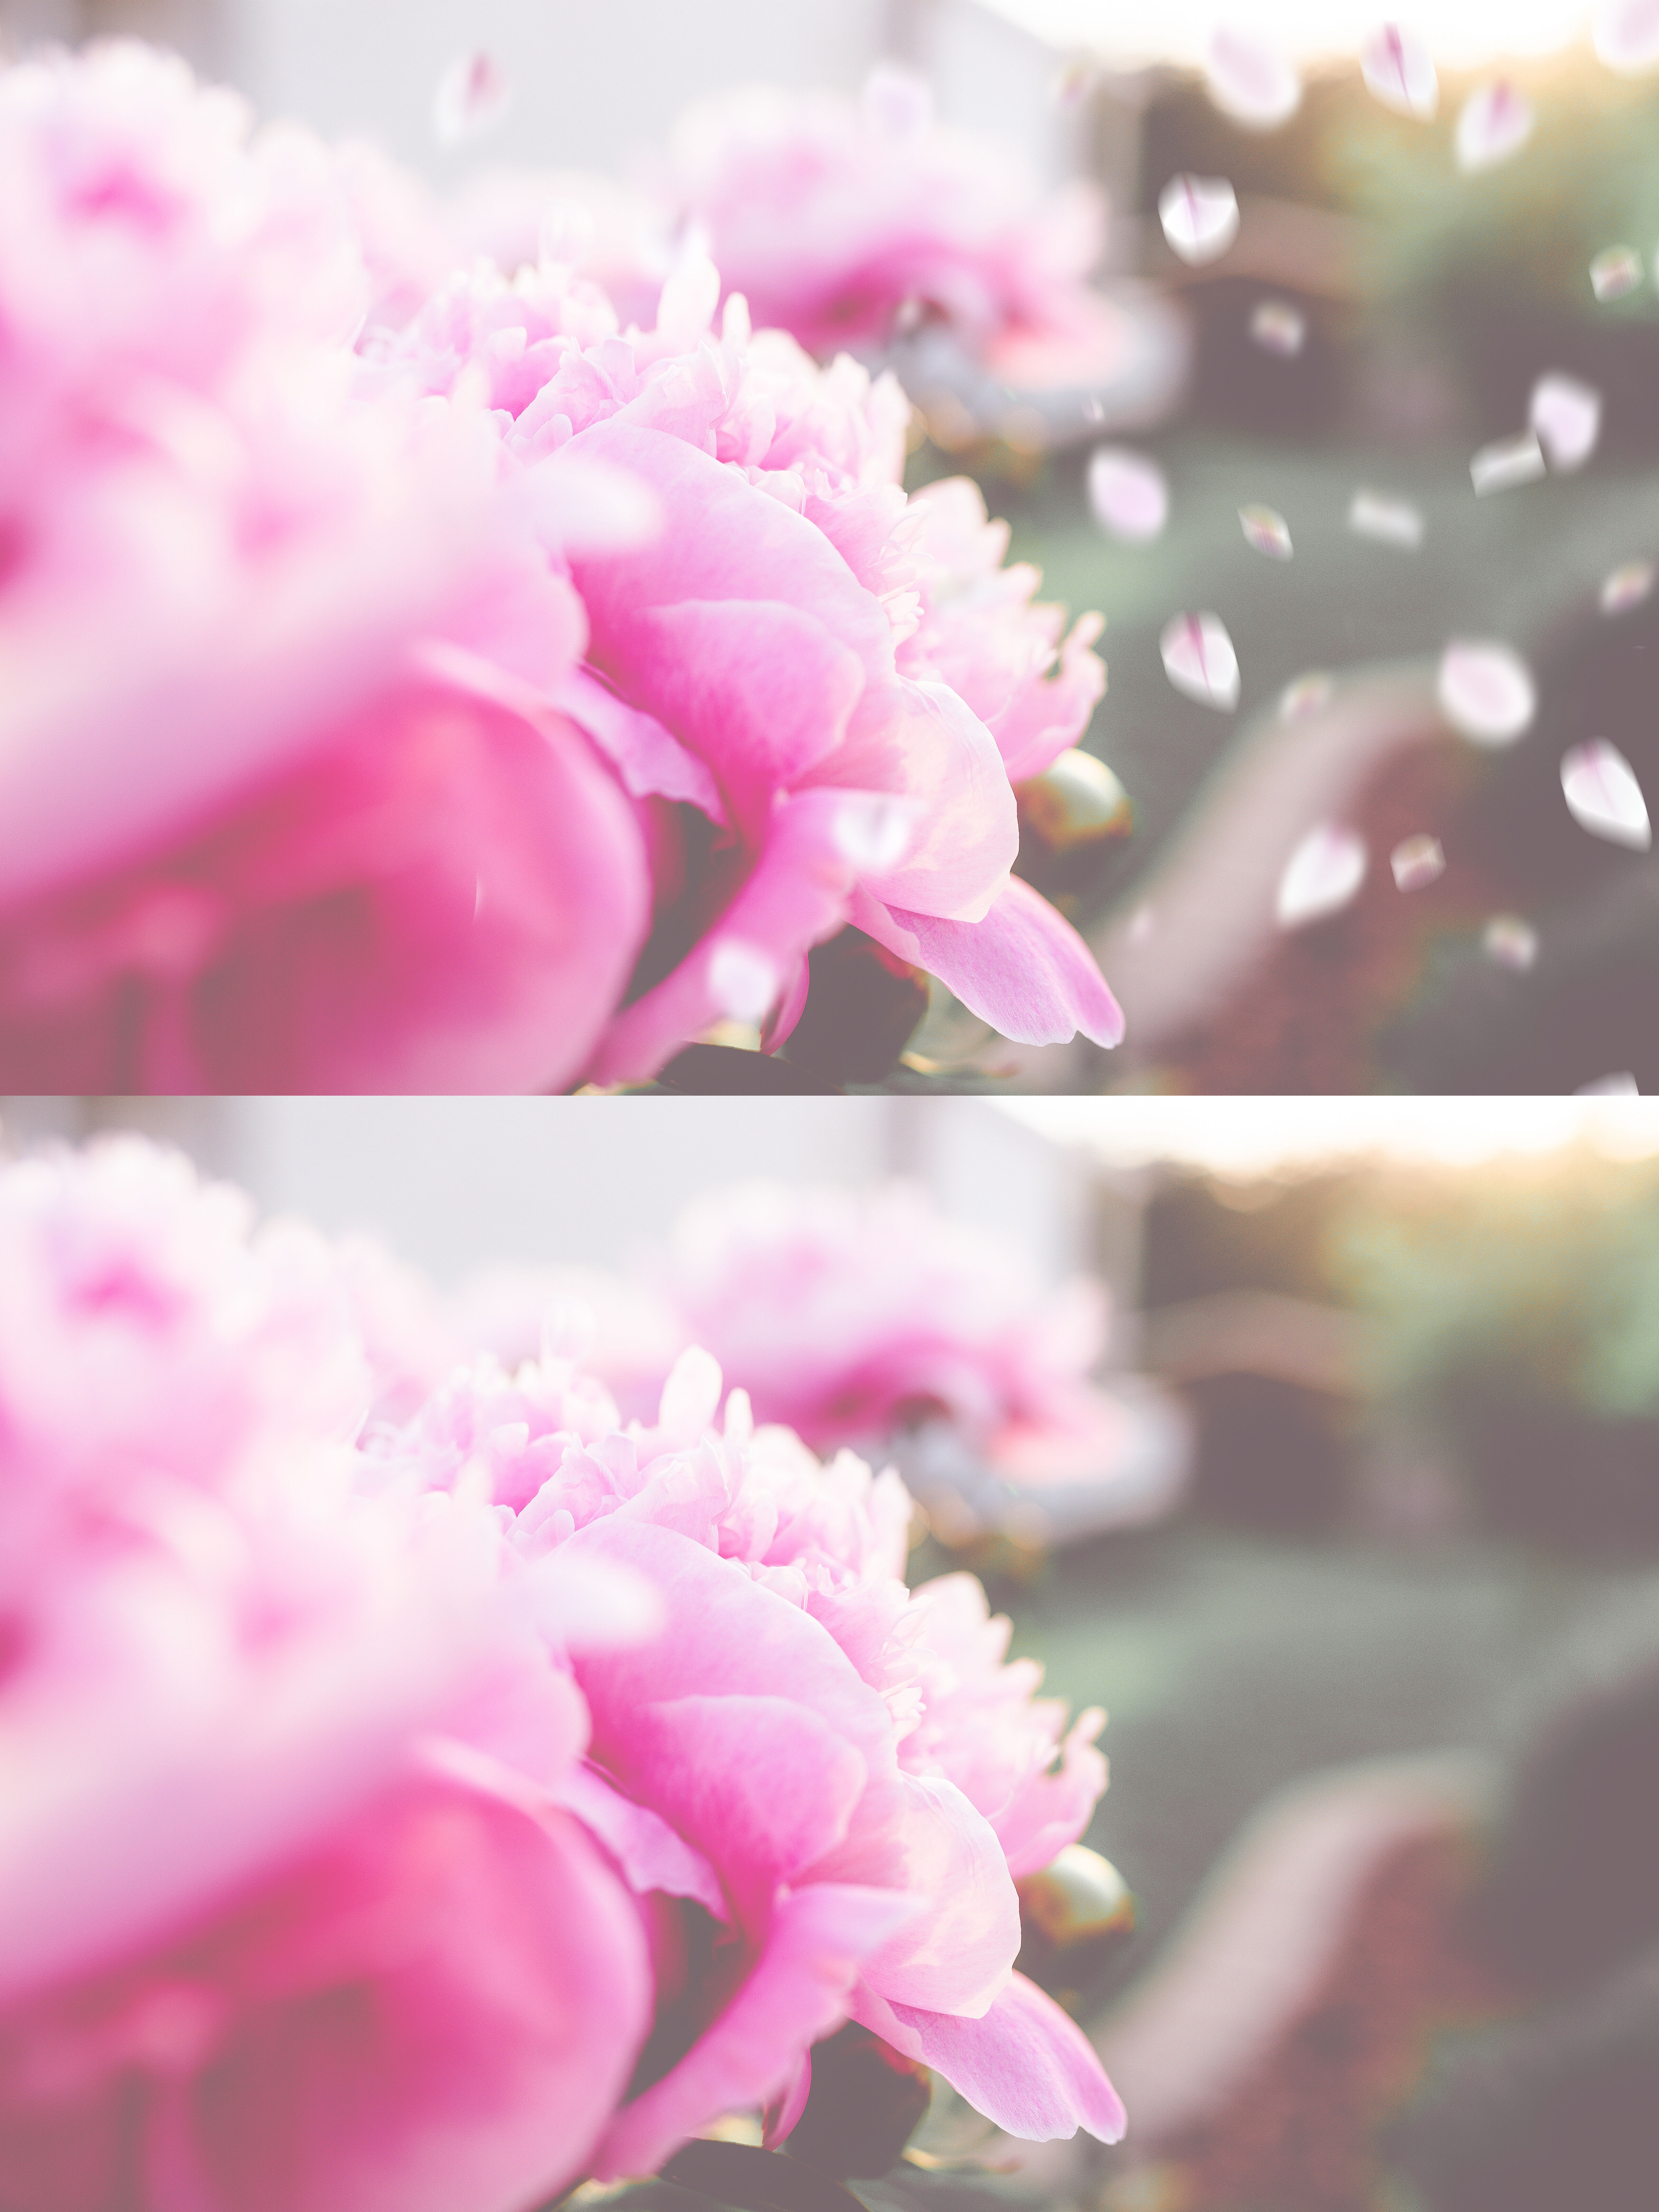 flower: Flower Overlay Photoshop